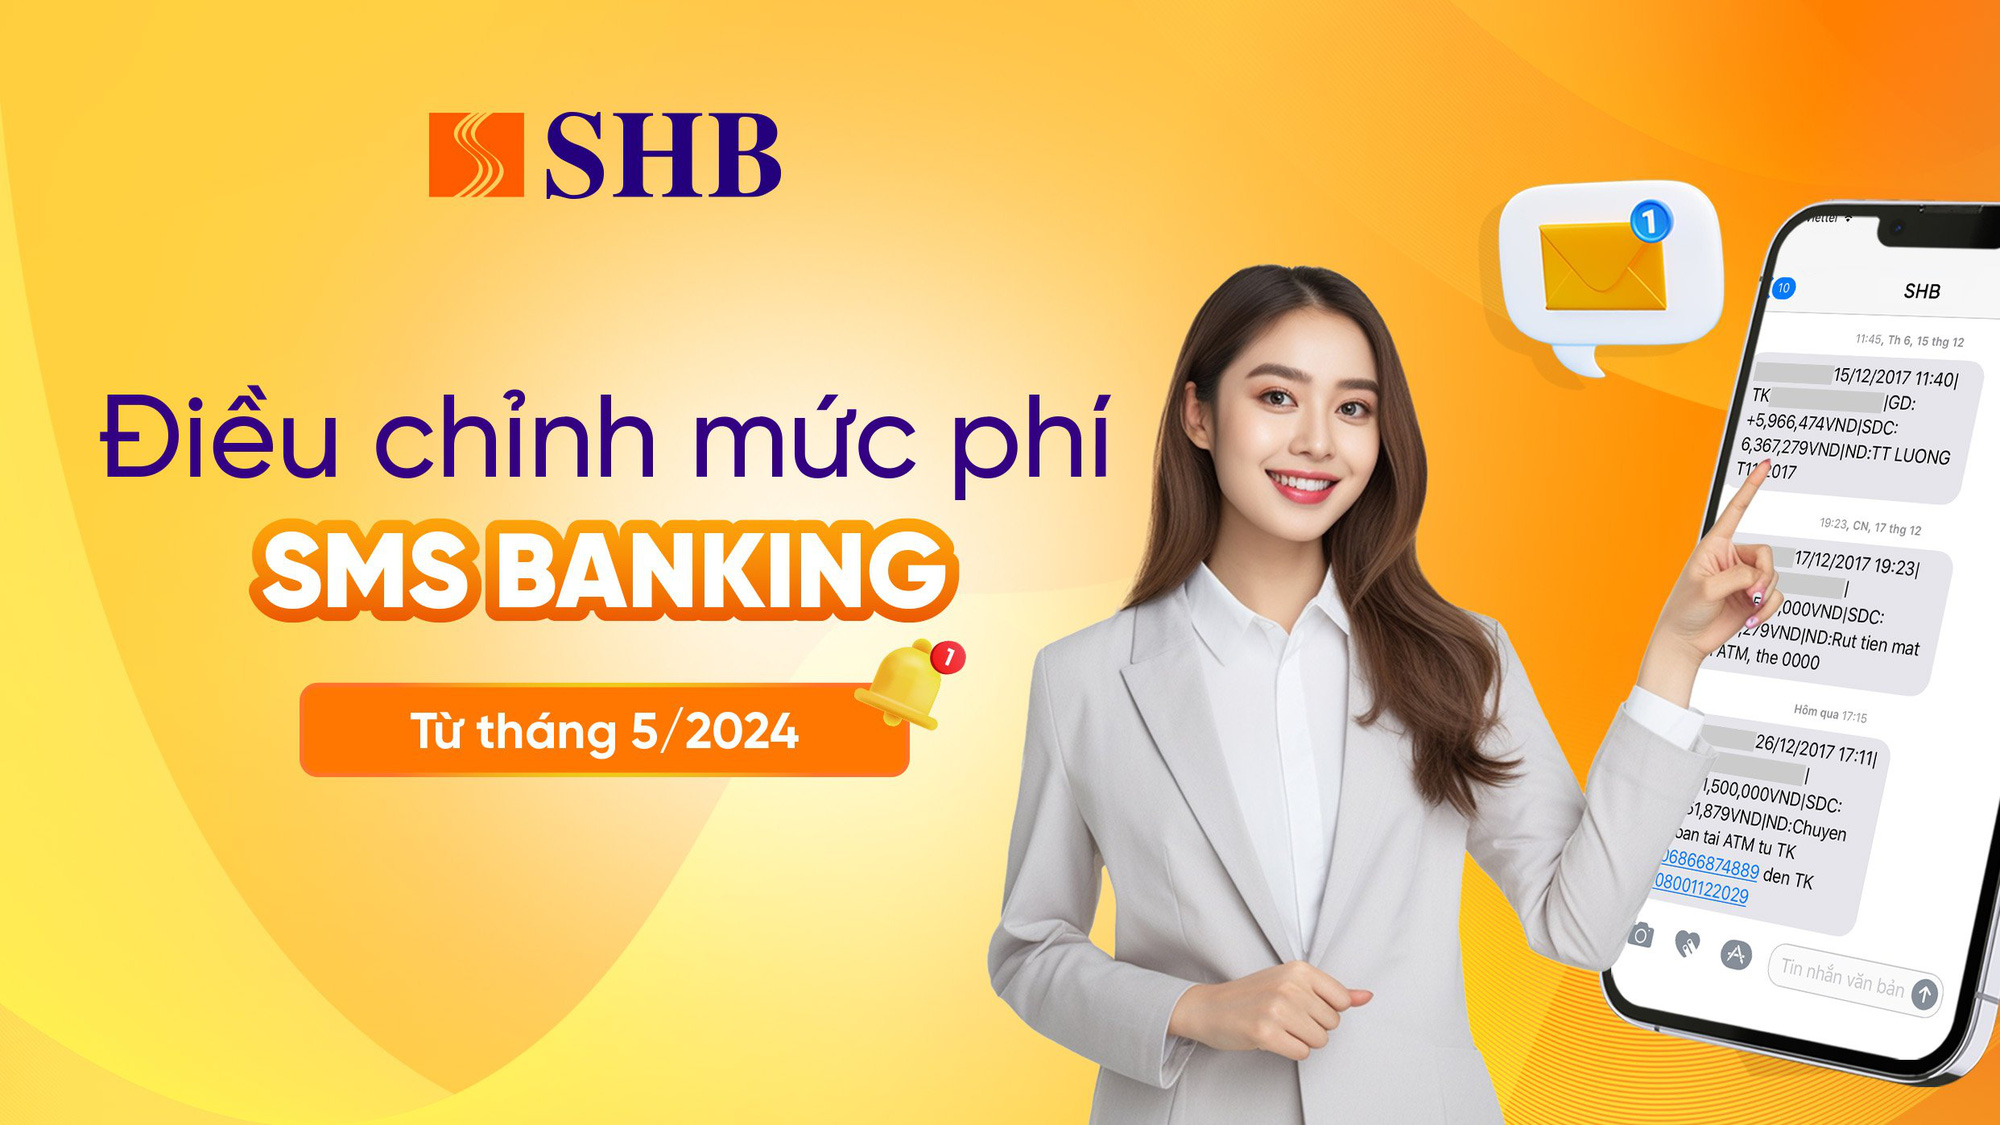 Ngân hàng SHB điều chỉnh phí SMS banking - Ảnh: SHB